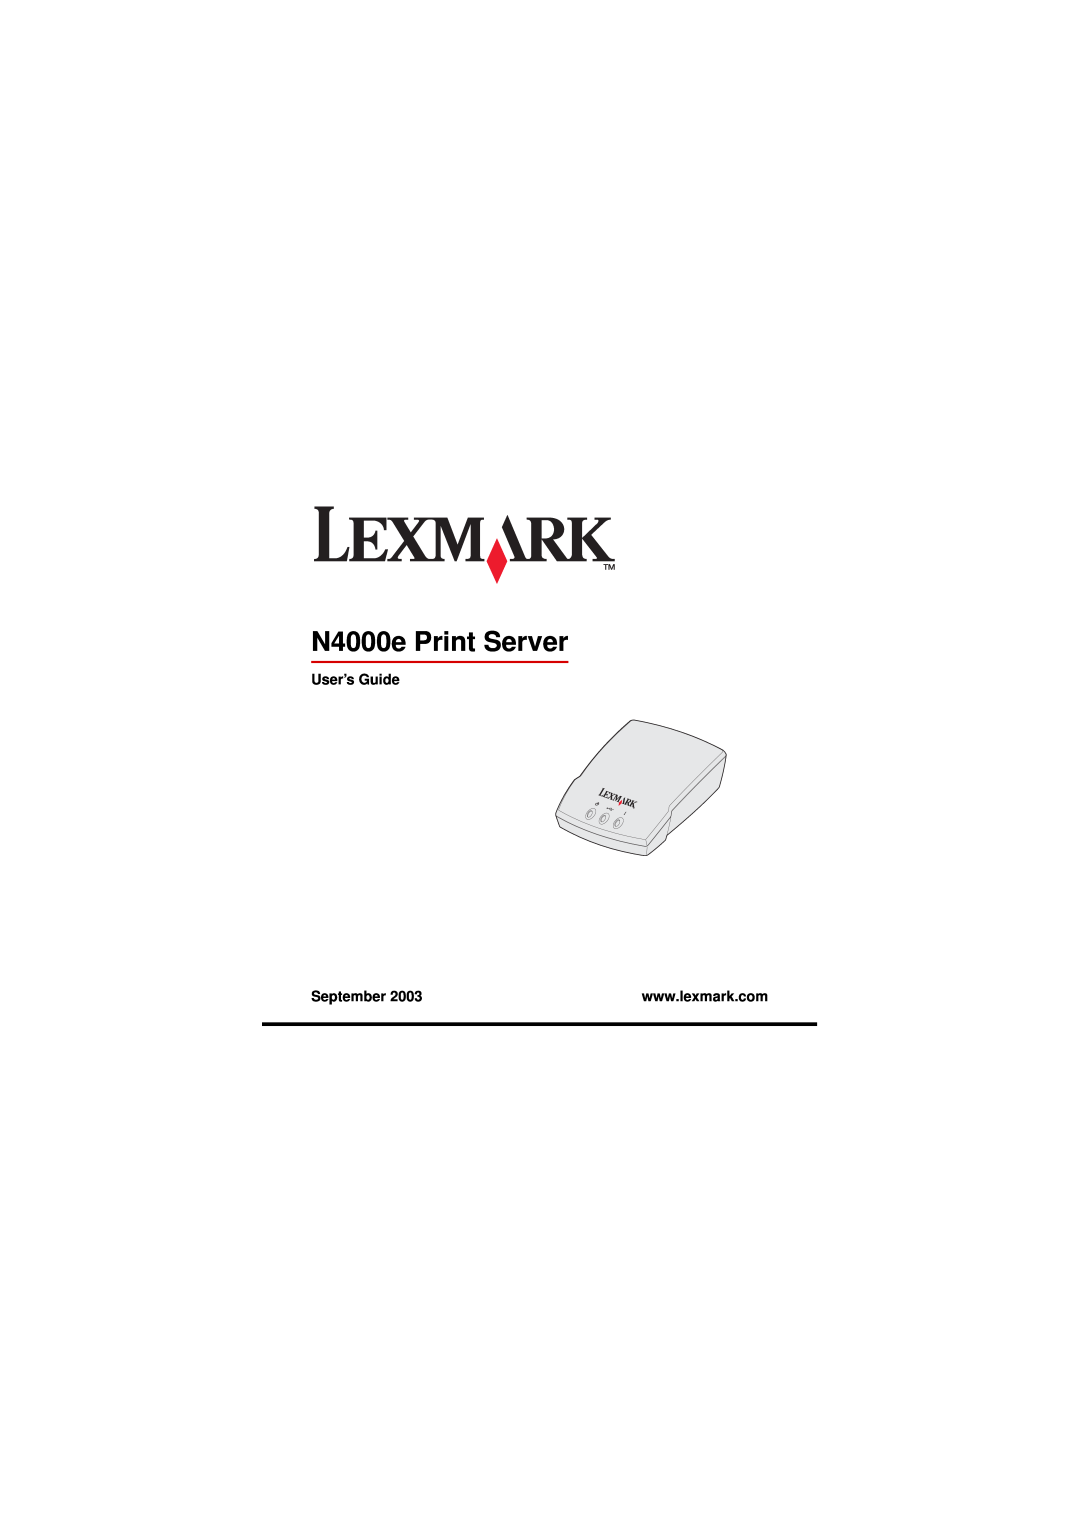 Lexmark manual N4000e Print Server, User’s Guide, September 